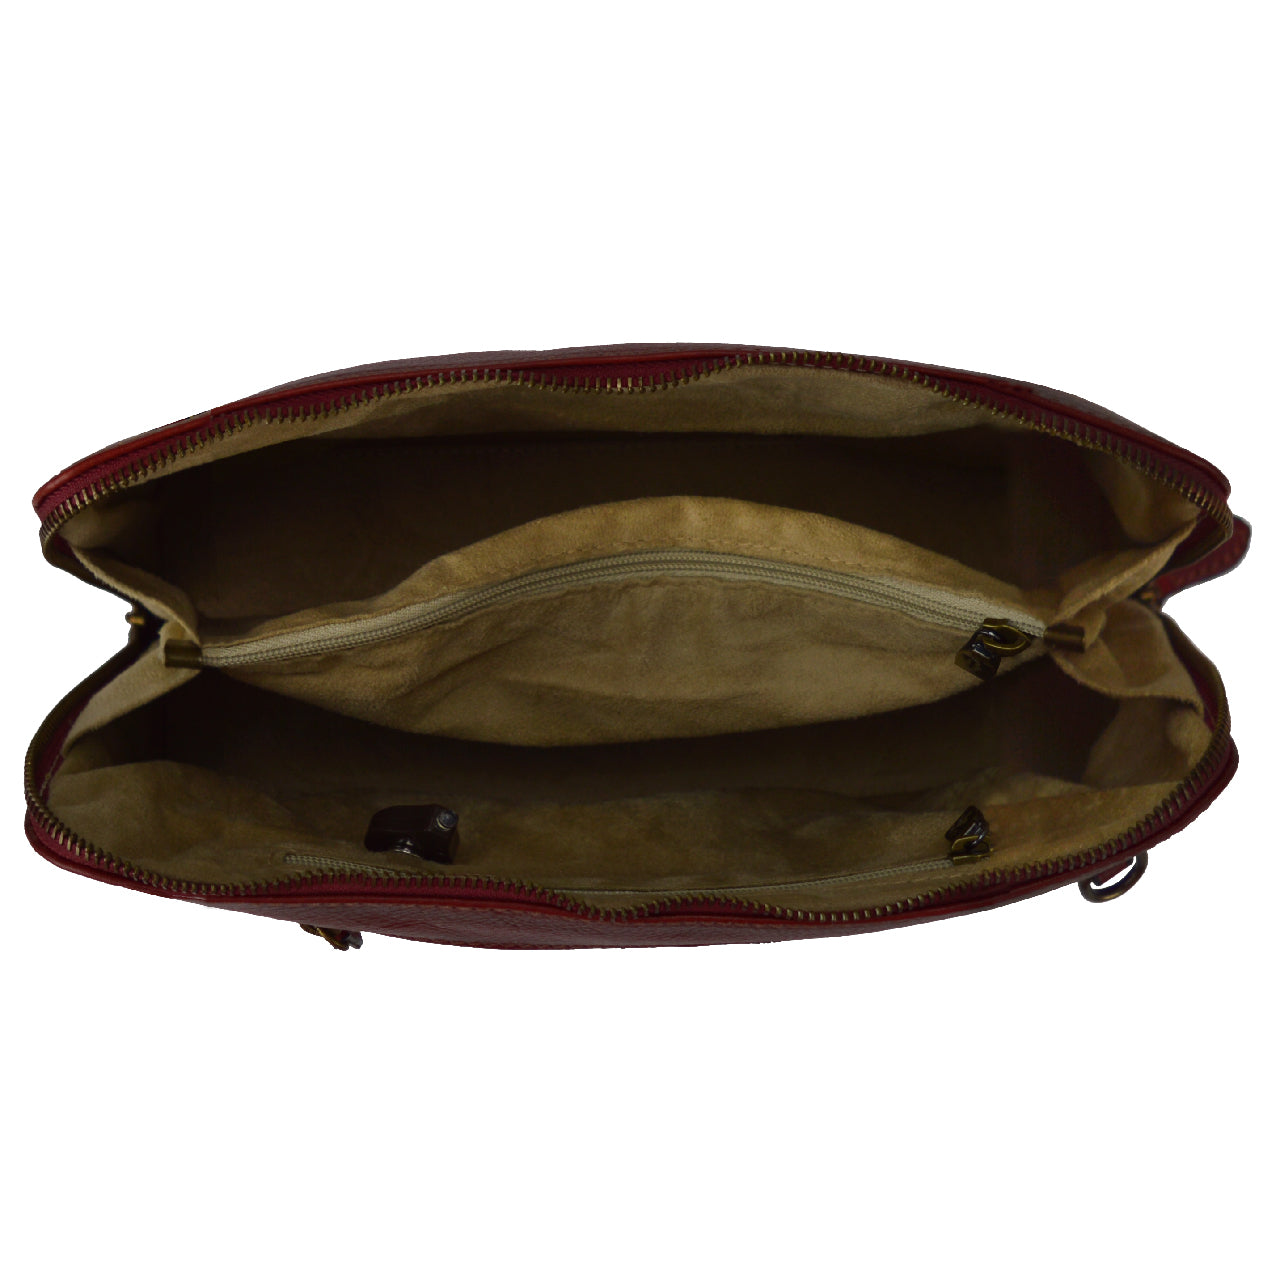 Pratesi Panzano B258 Bag in genuine Italian leather